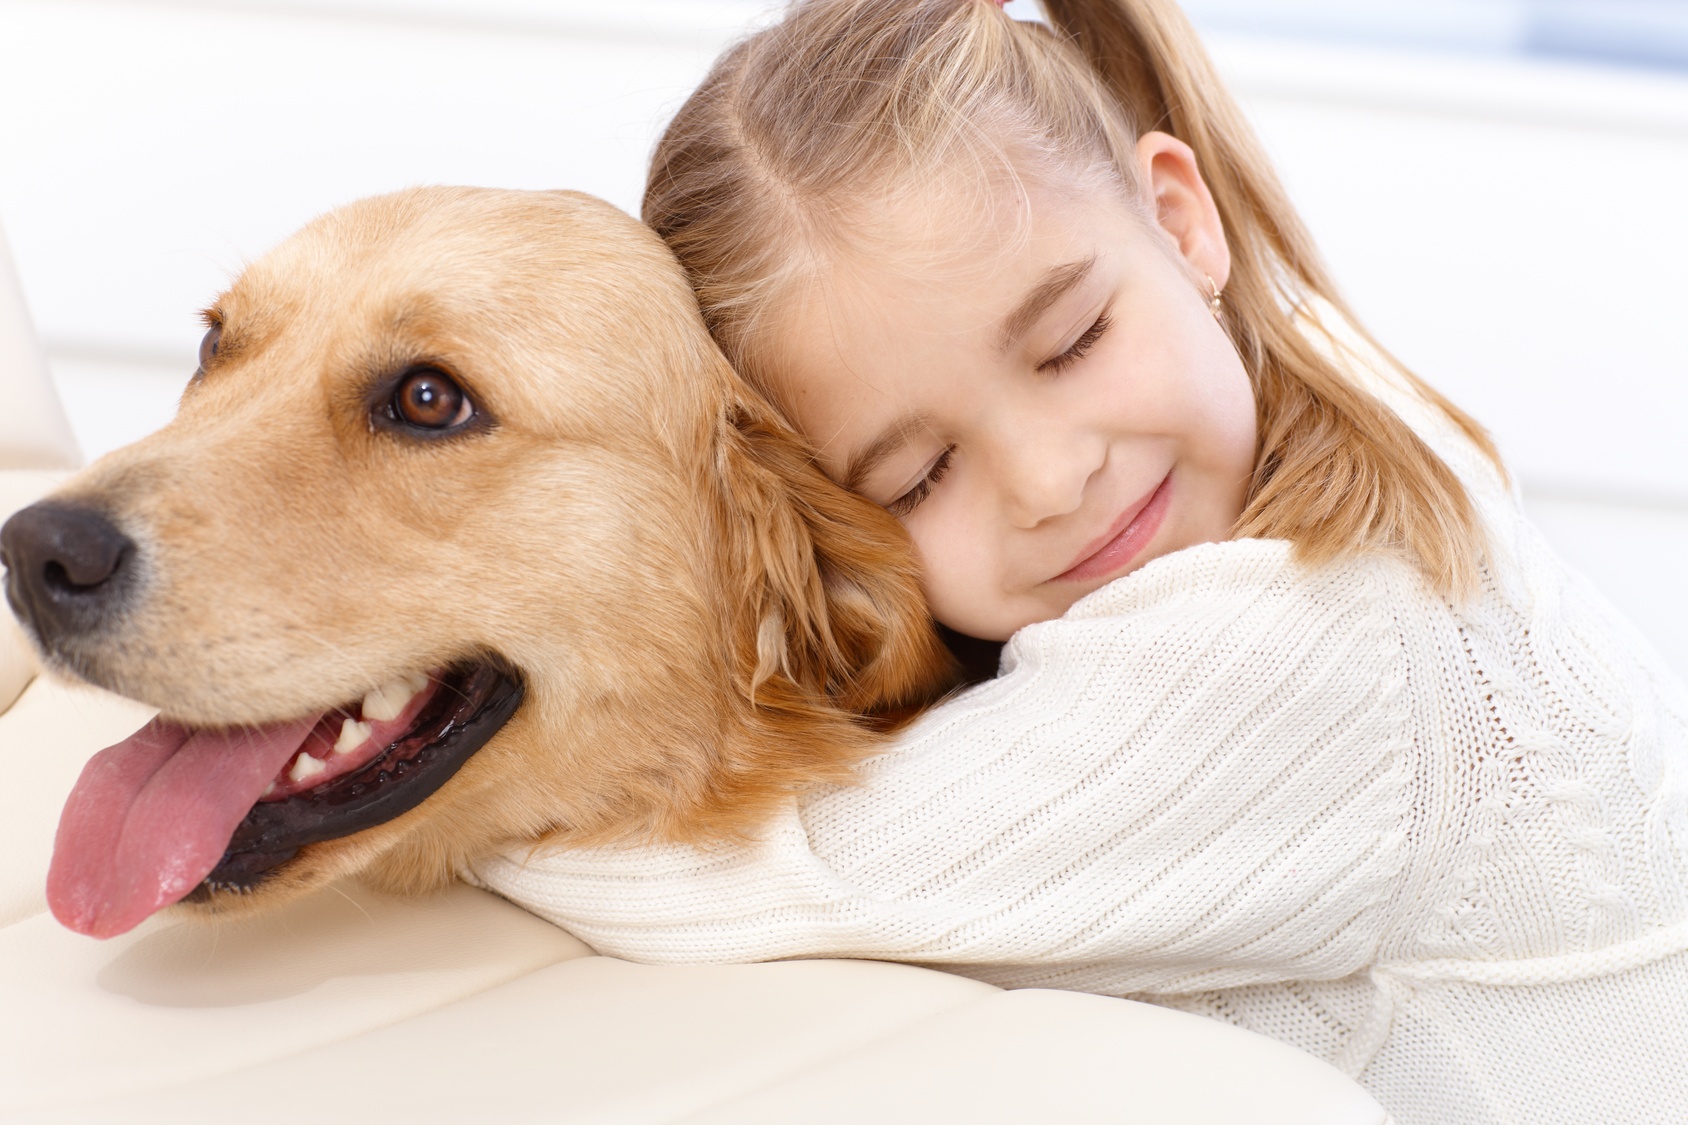 Come ritorna la felicità con la pet therapy